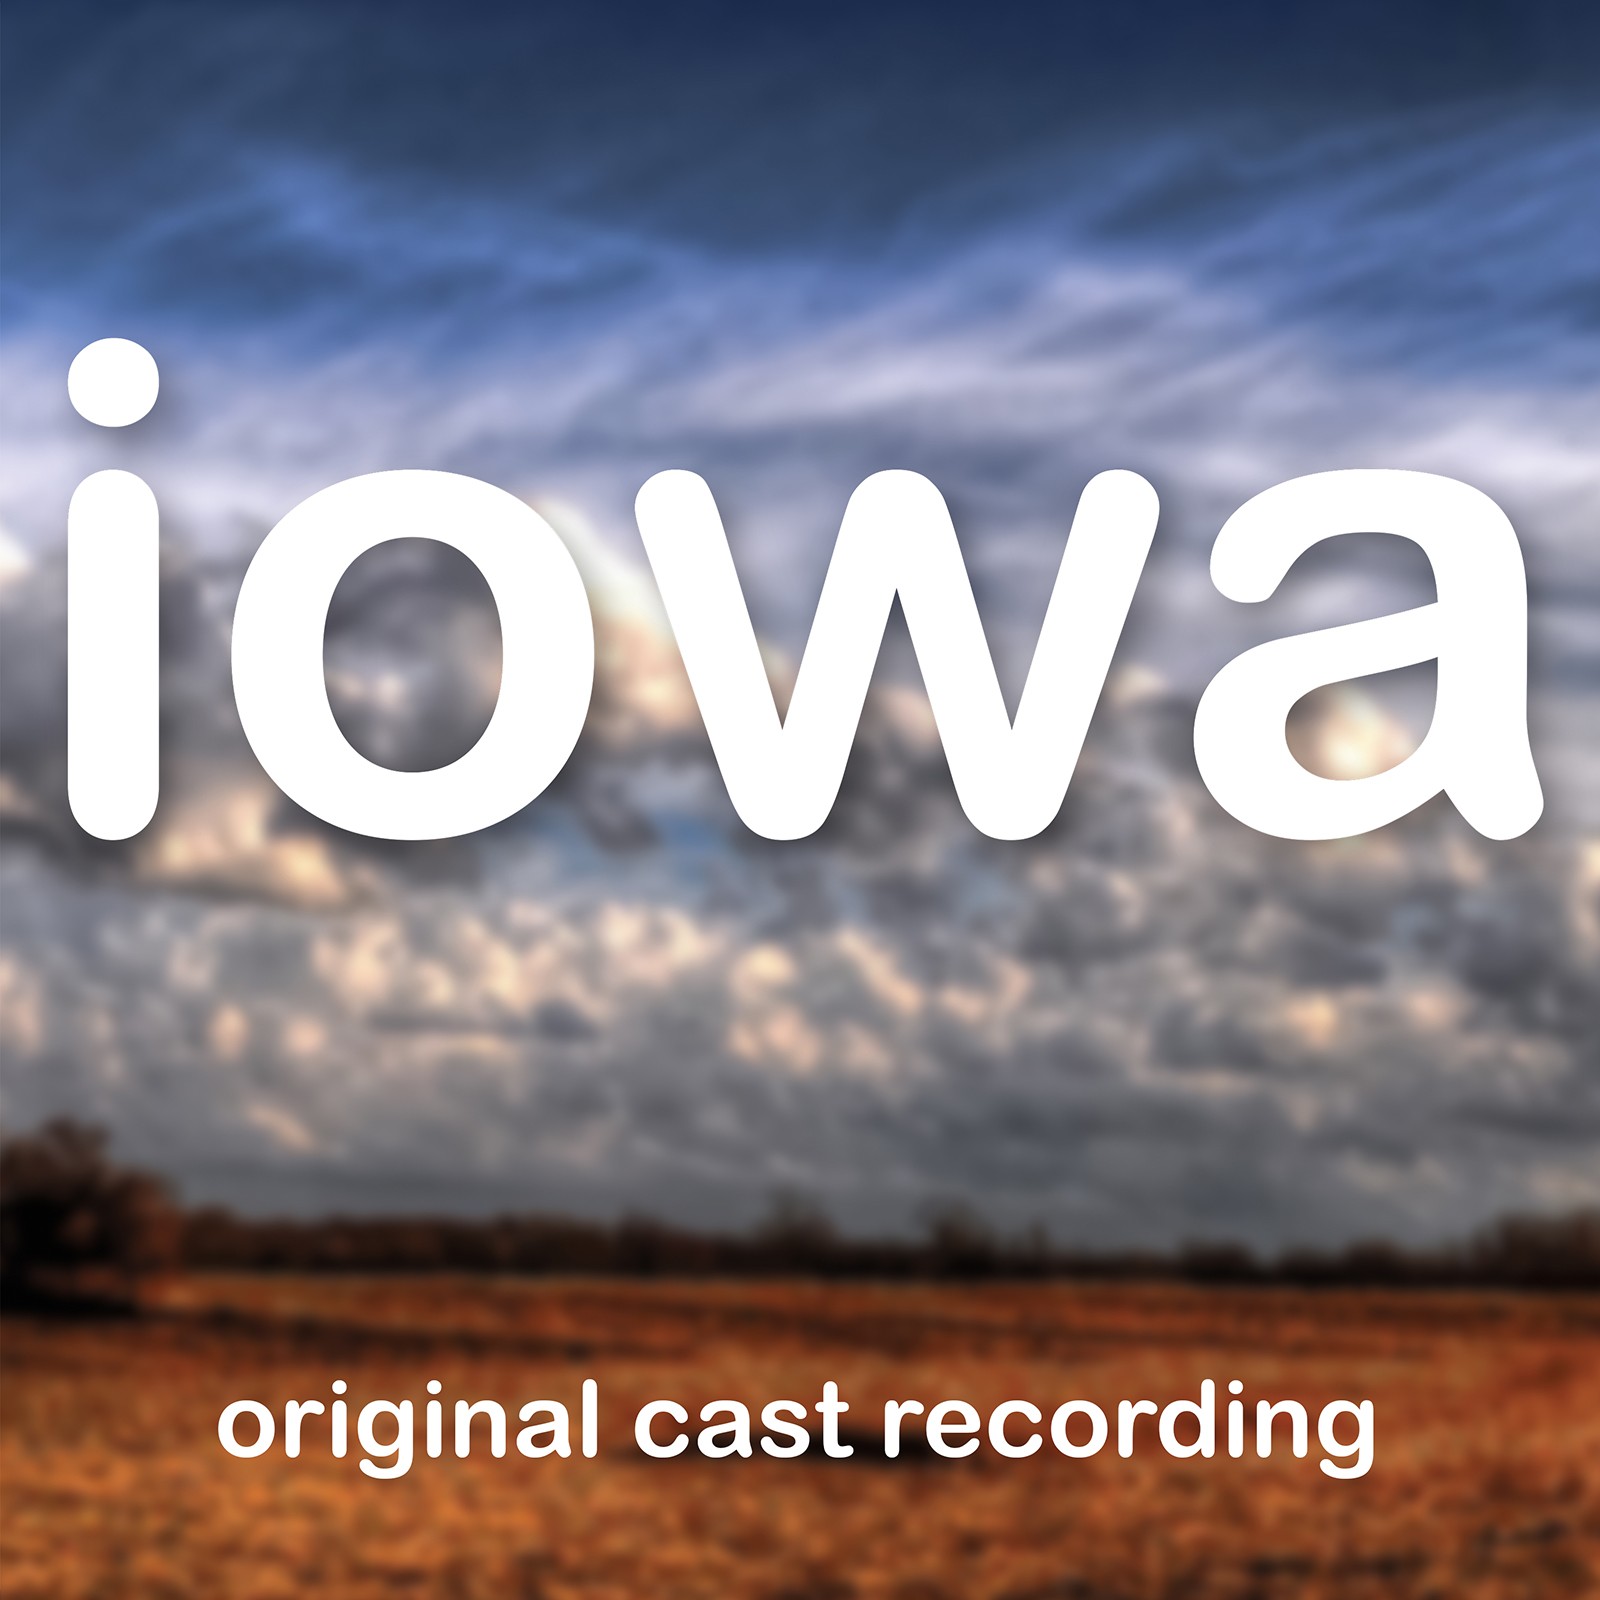 Iowa – Original Cast Recording